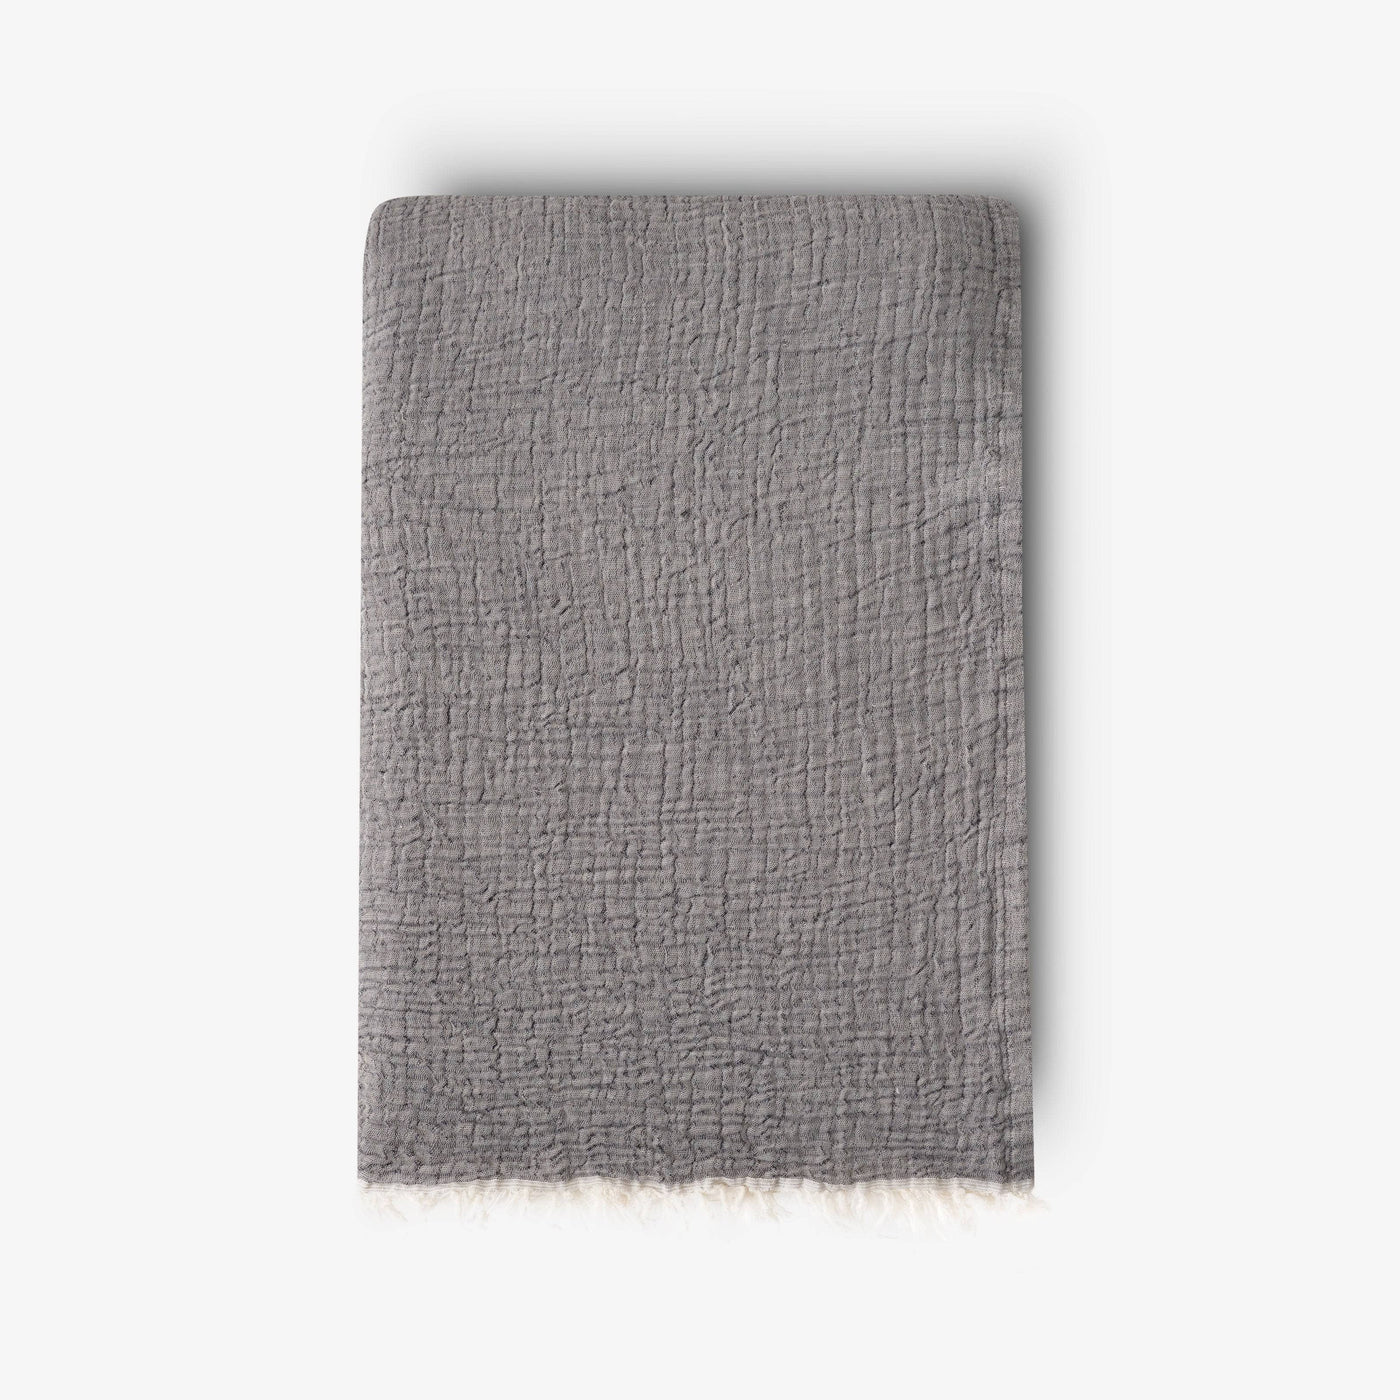 Birch Textured 100% Turkish Cotton Bedspread, Grey 1